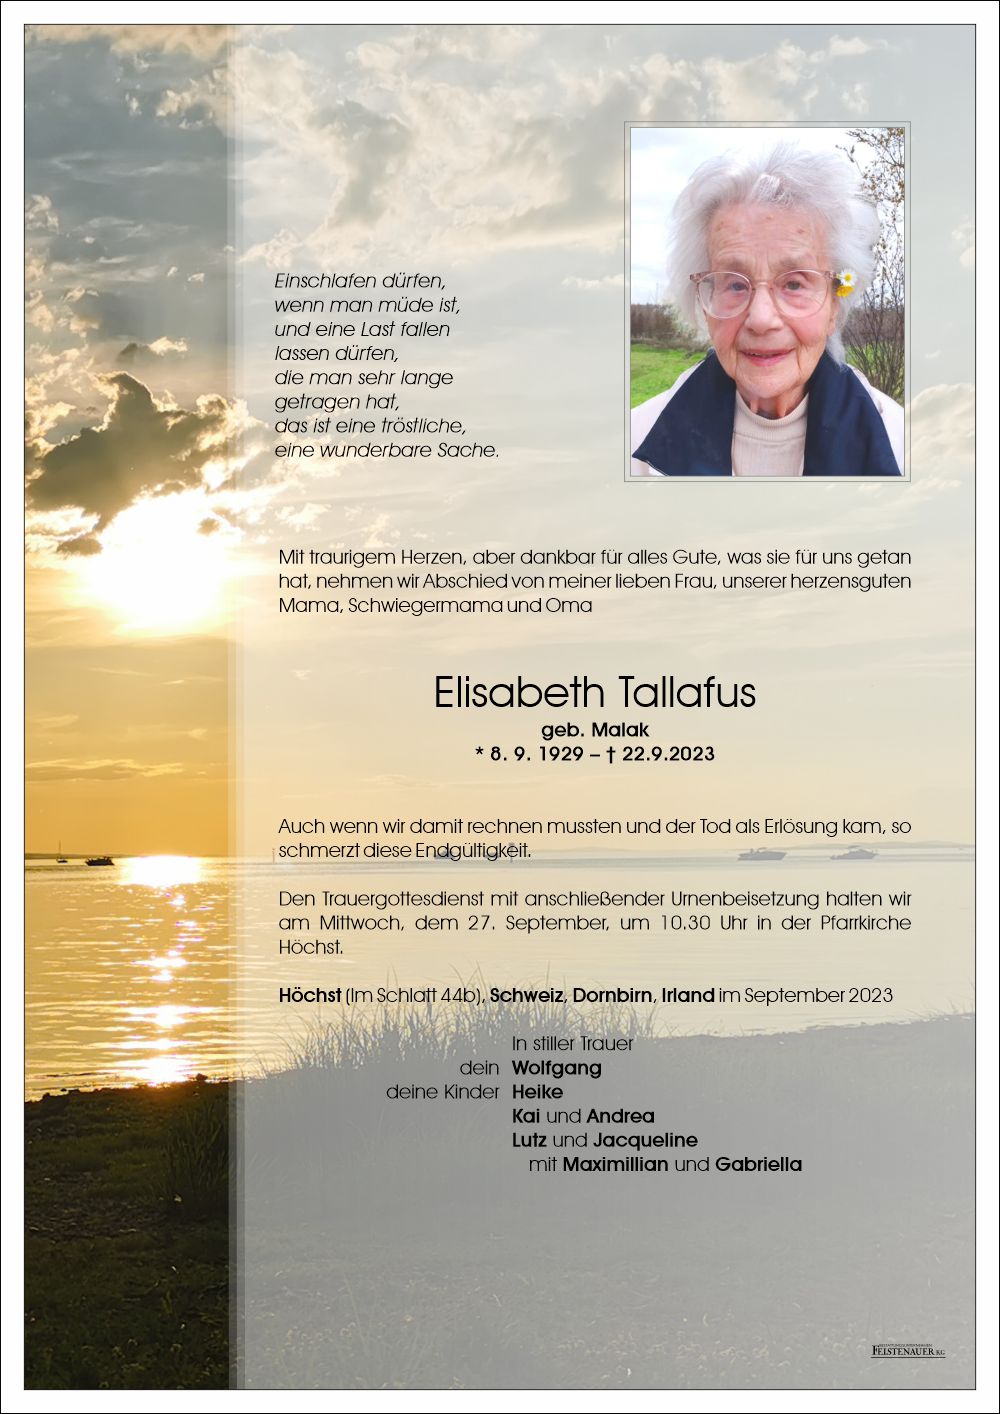 Elisabeth Tallafus